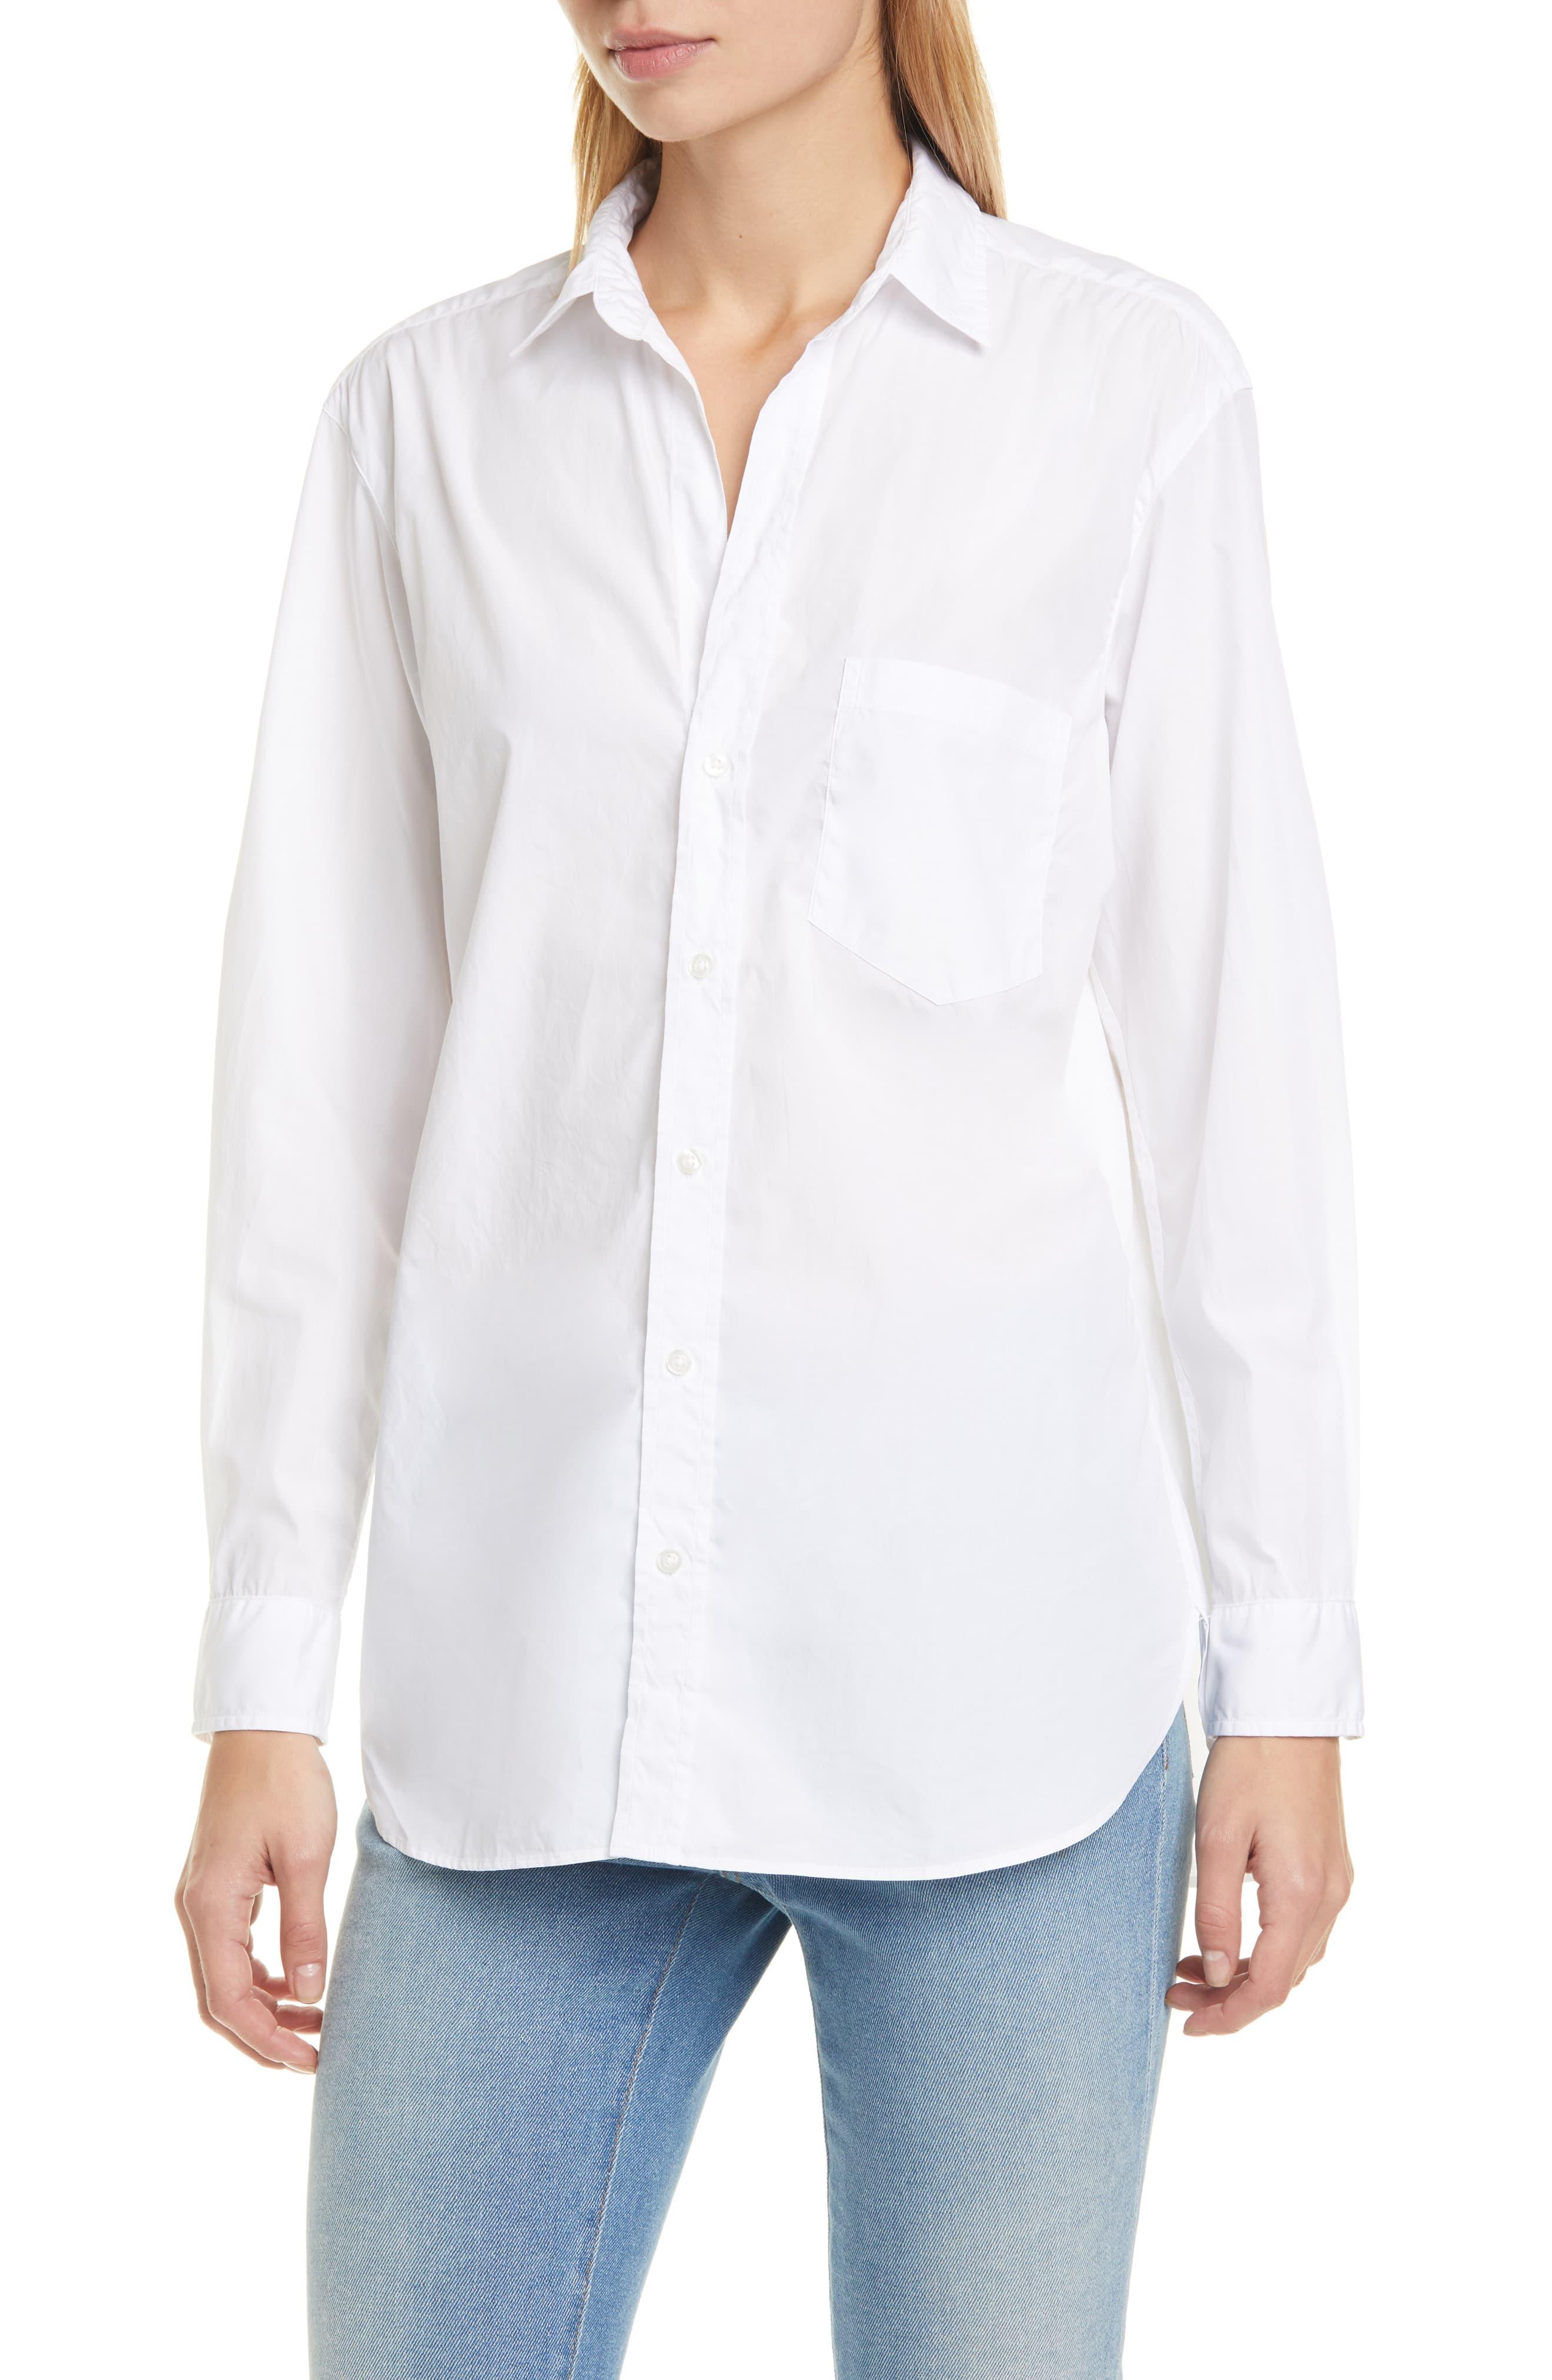 Frank & Eileen Joedy Superfine Cotton Button-up Shirt in White - Lyst